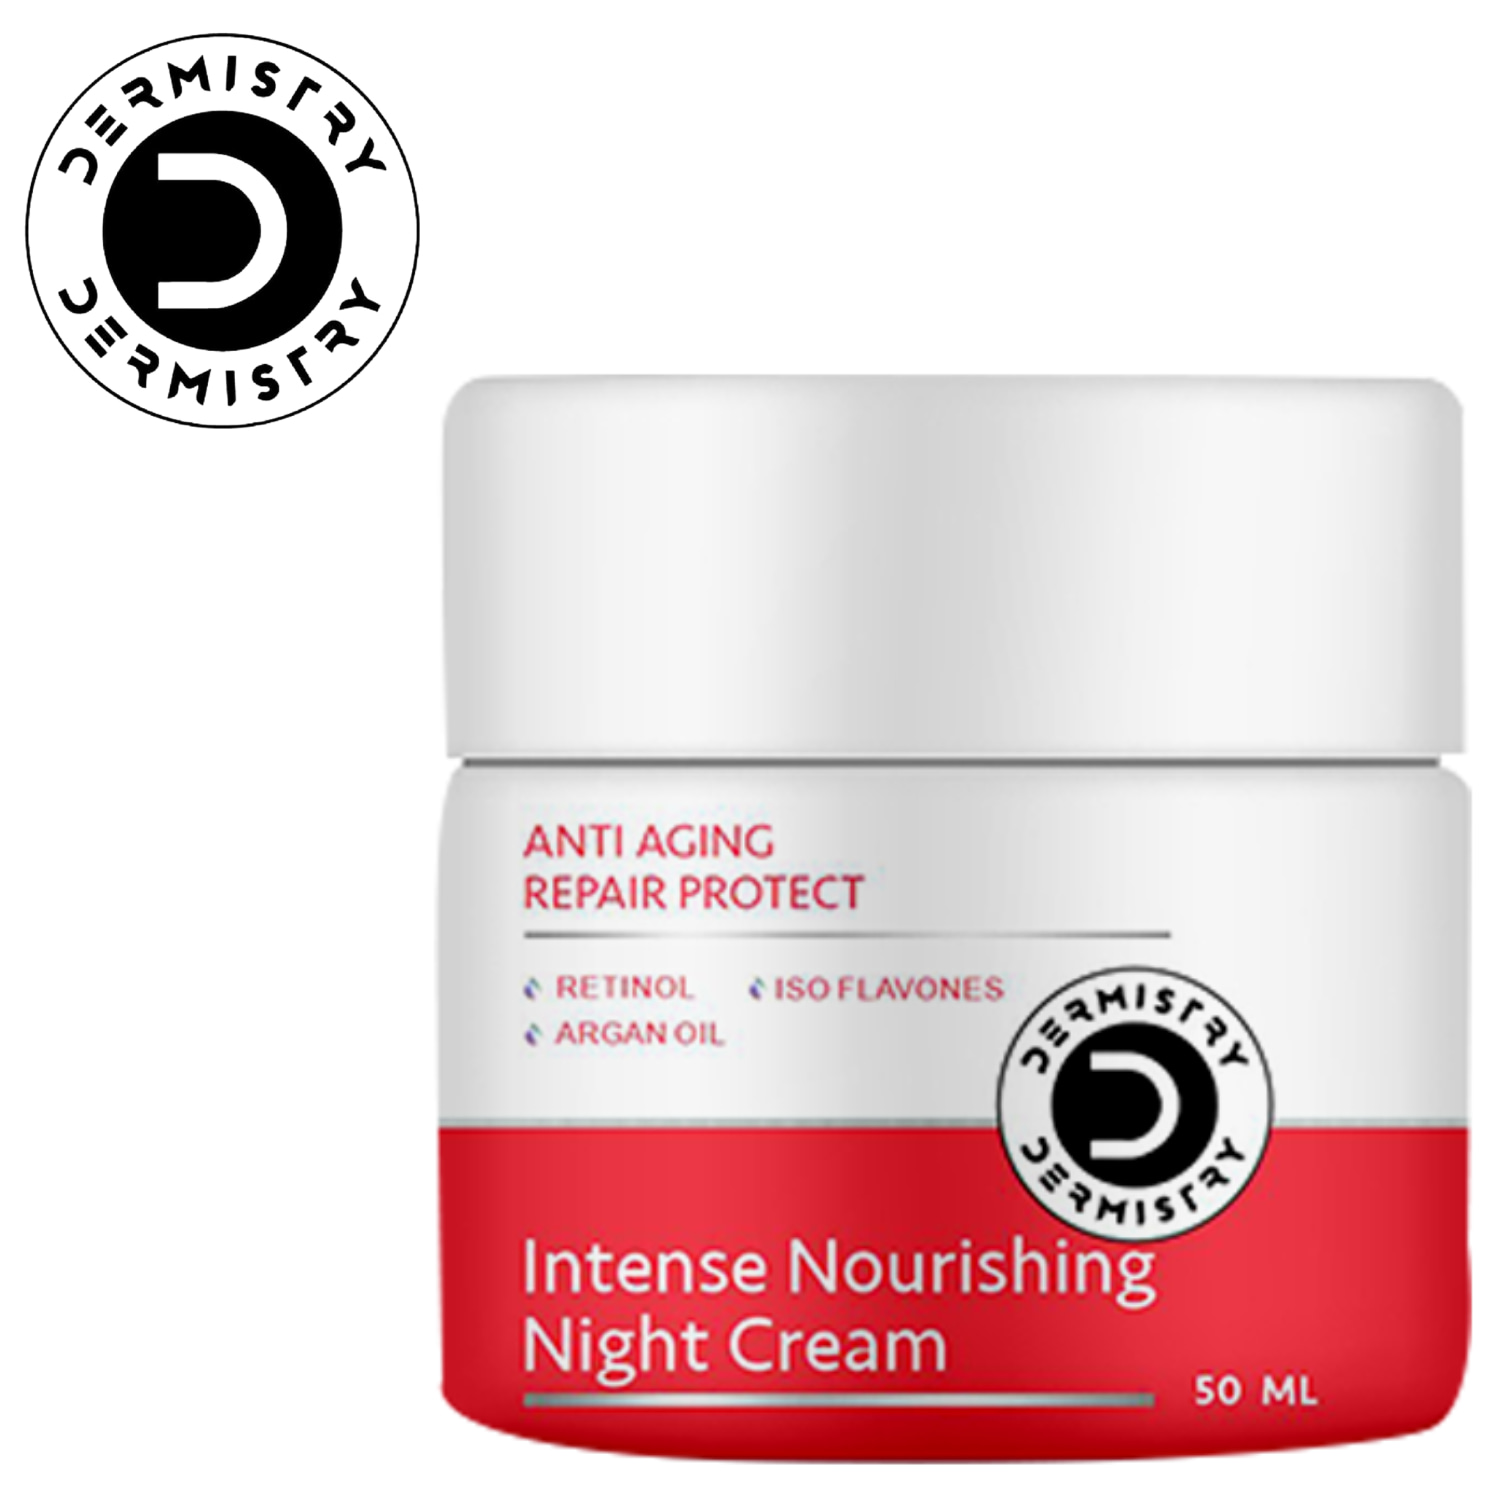 Dermistry Anti Aging Repair Protect Night Cream Retinol Hyaluronic Acid Wrinkles Fine Lines-50ml